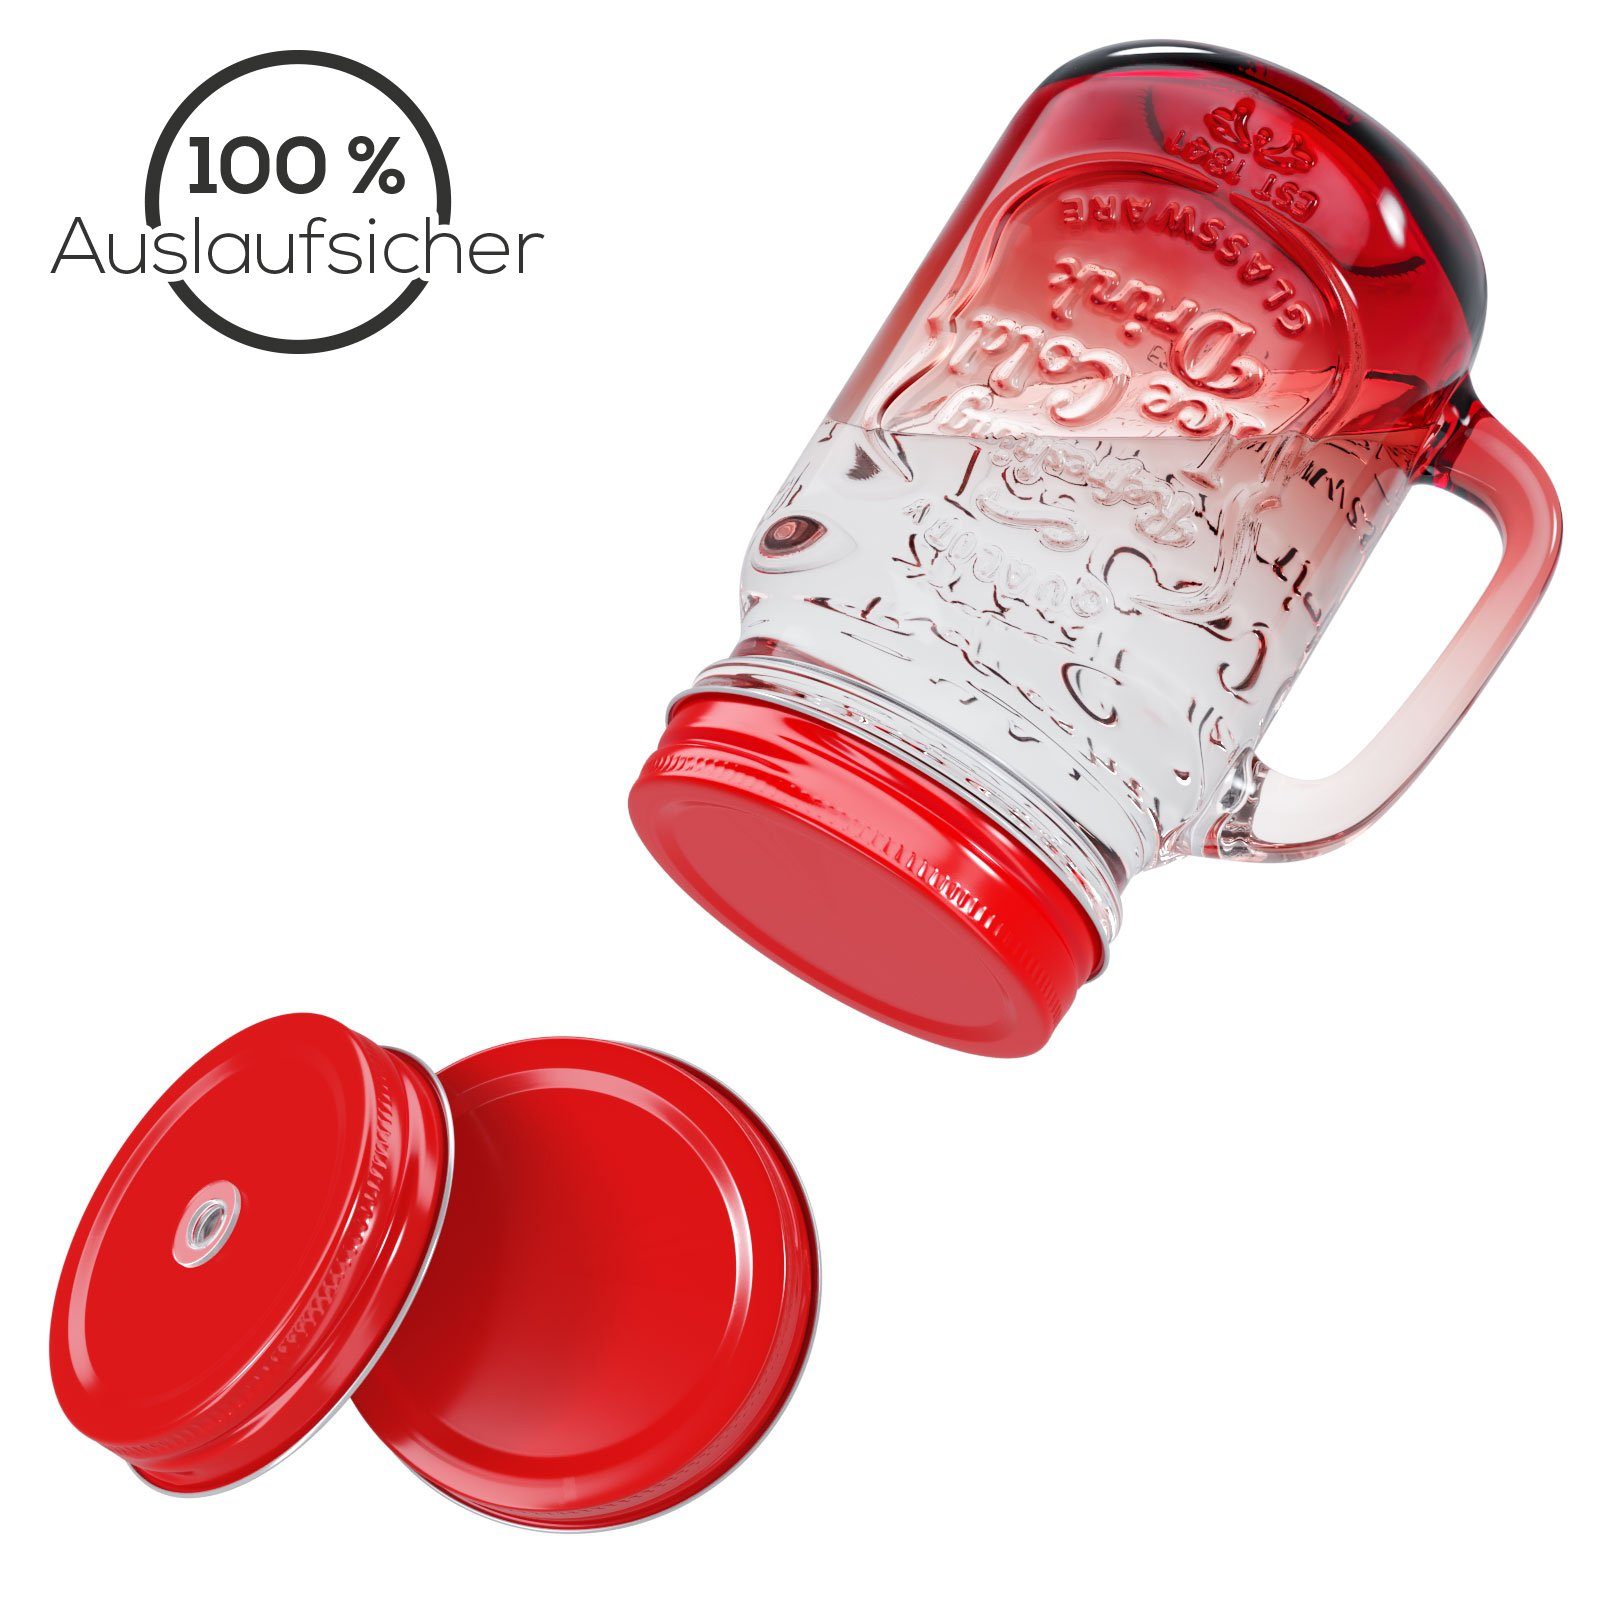 Wellgro Glas Trinkgläser Trinkhalm + - Ersatzdeckeln Farbverlauf und 500ml Deckel